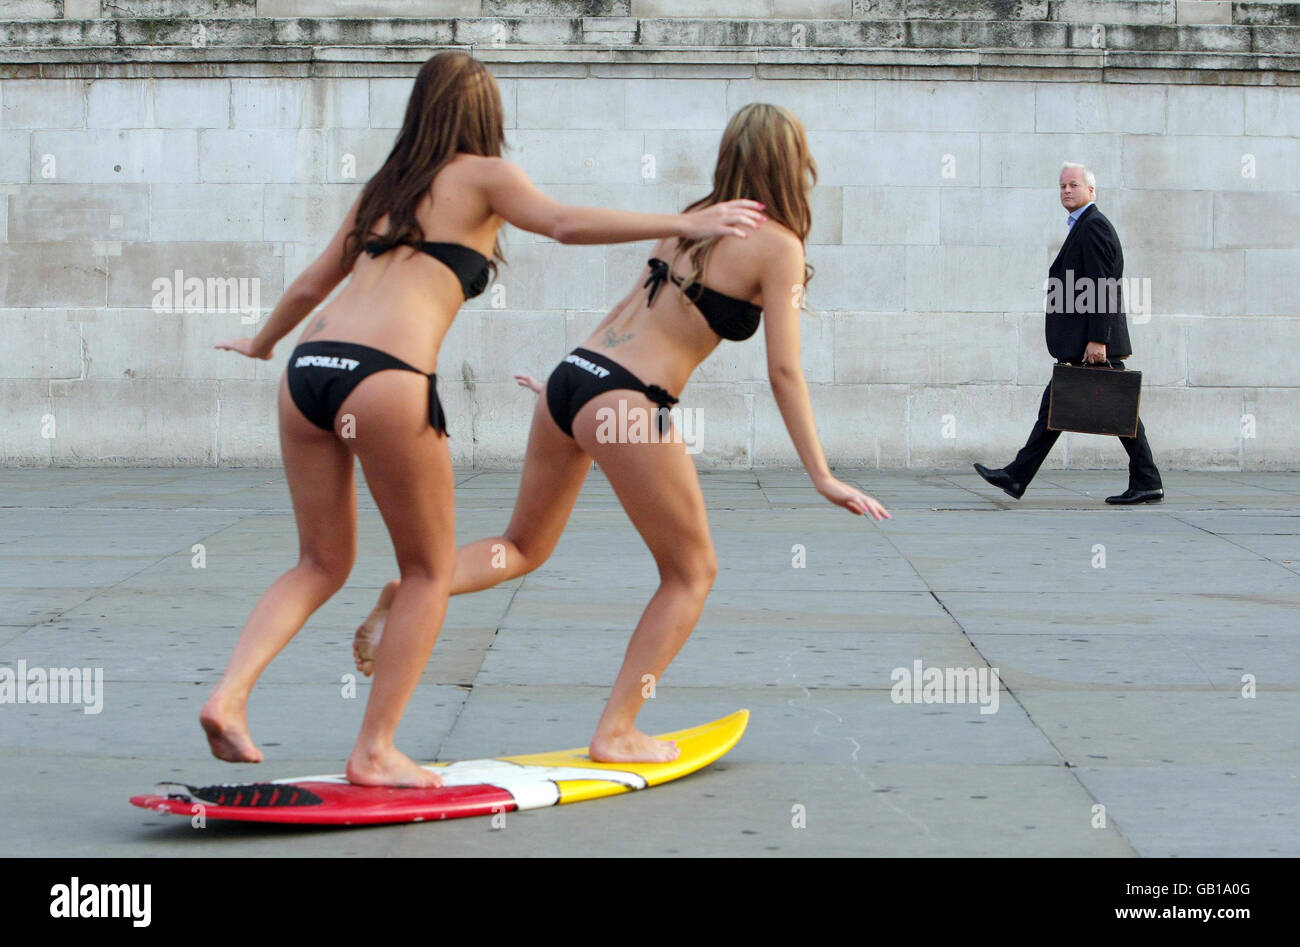 Los modelos Kristina Andriotis (izquierda) y Natasha Andriotis atraen la atención de un transeúnte al lanzamiento del canal de deportes extremos de Internet MPORA.TV, en Trafalgar Square, Londres. Foto de stock